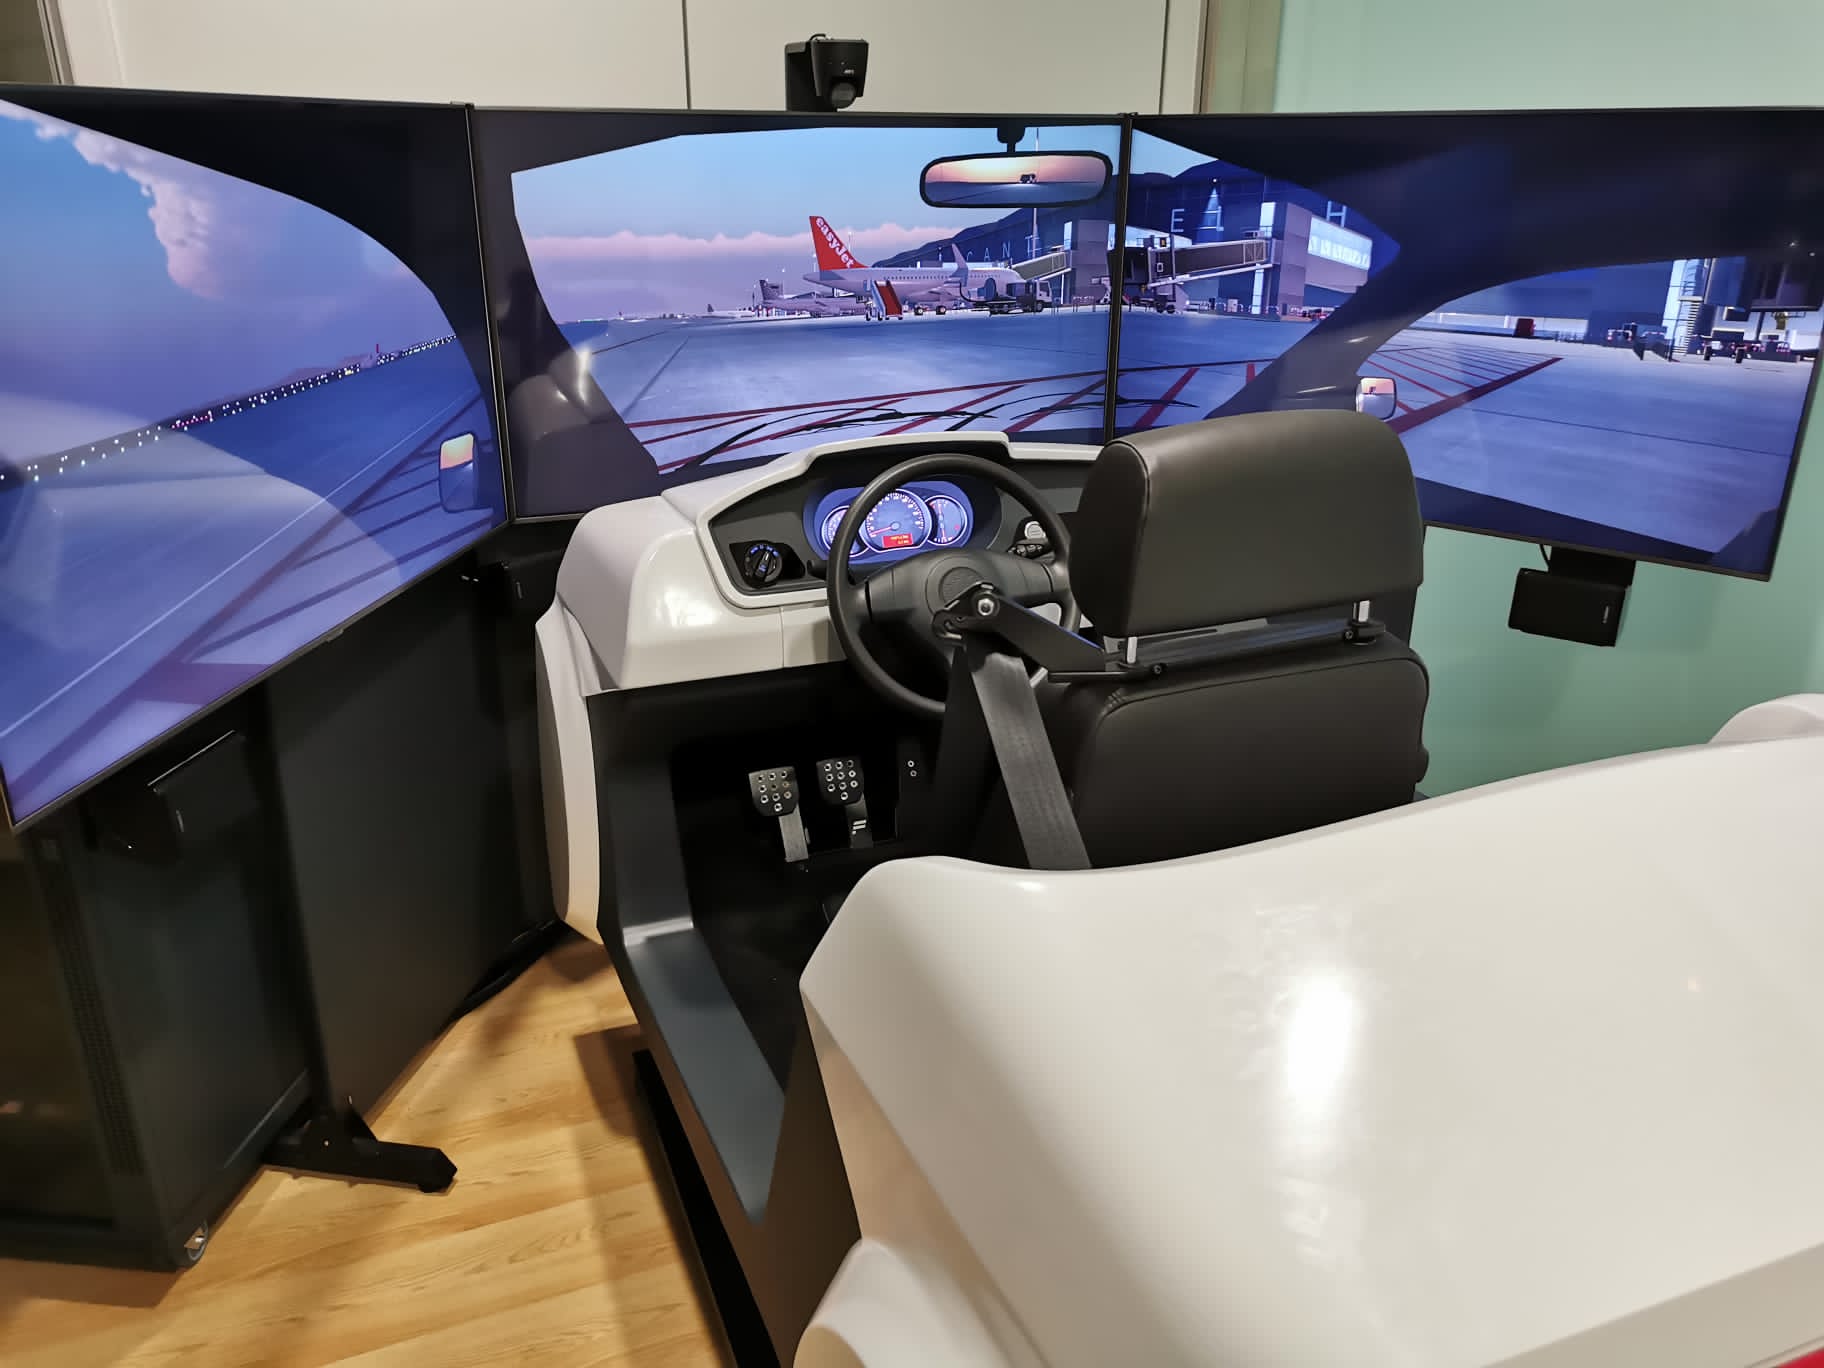 Simulador de conducción – Shopavia